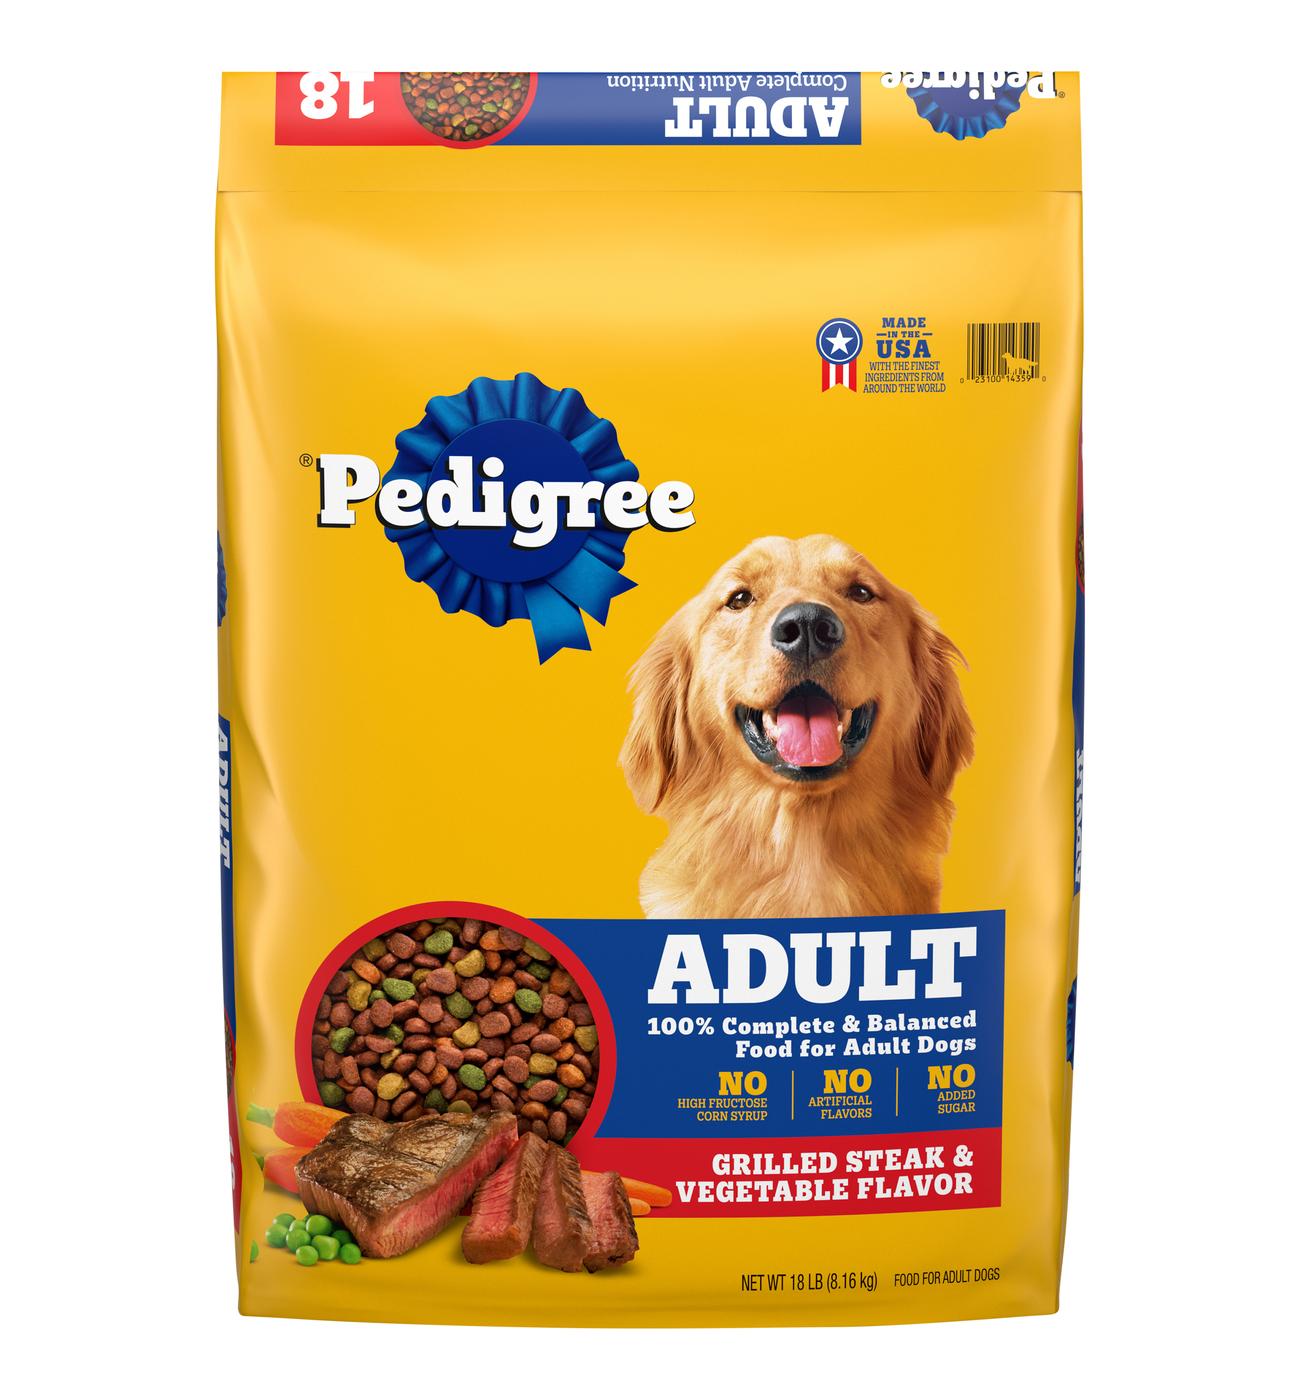 Pedigree Grilled Steak & Vegetable Adult Dry Dog Food; image 1 of 4